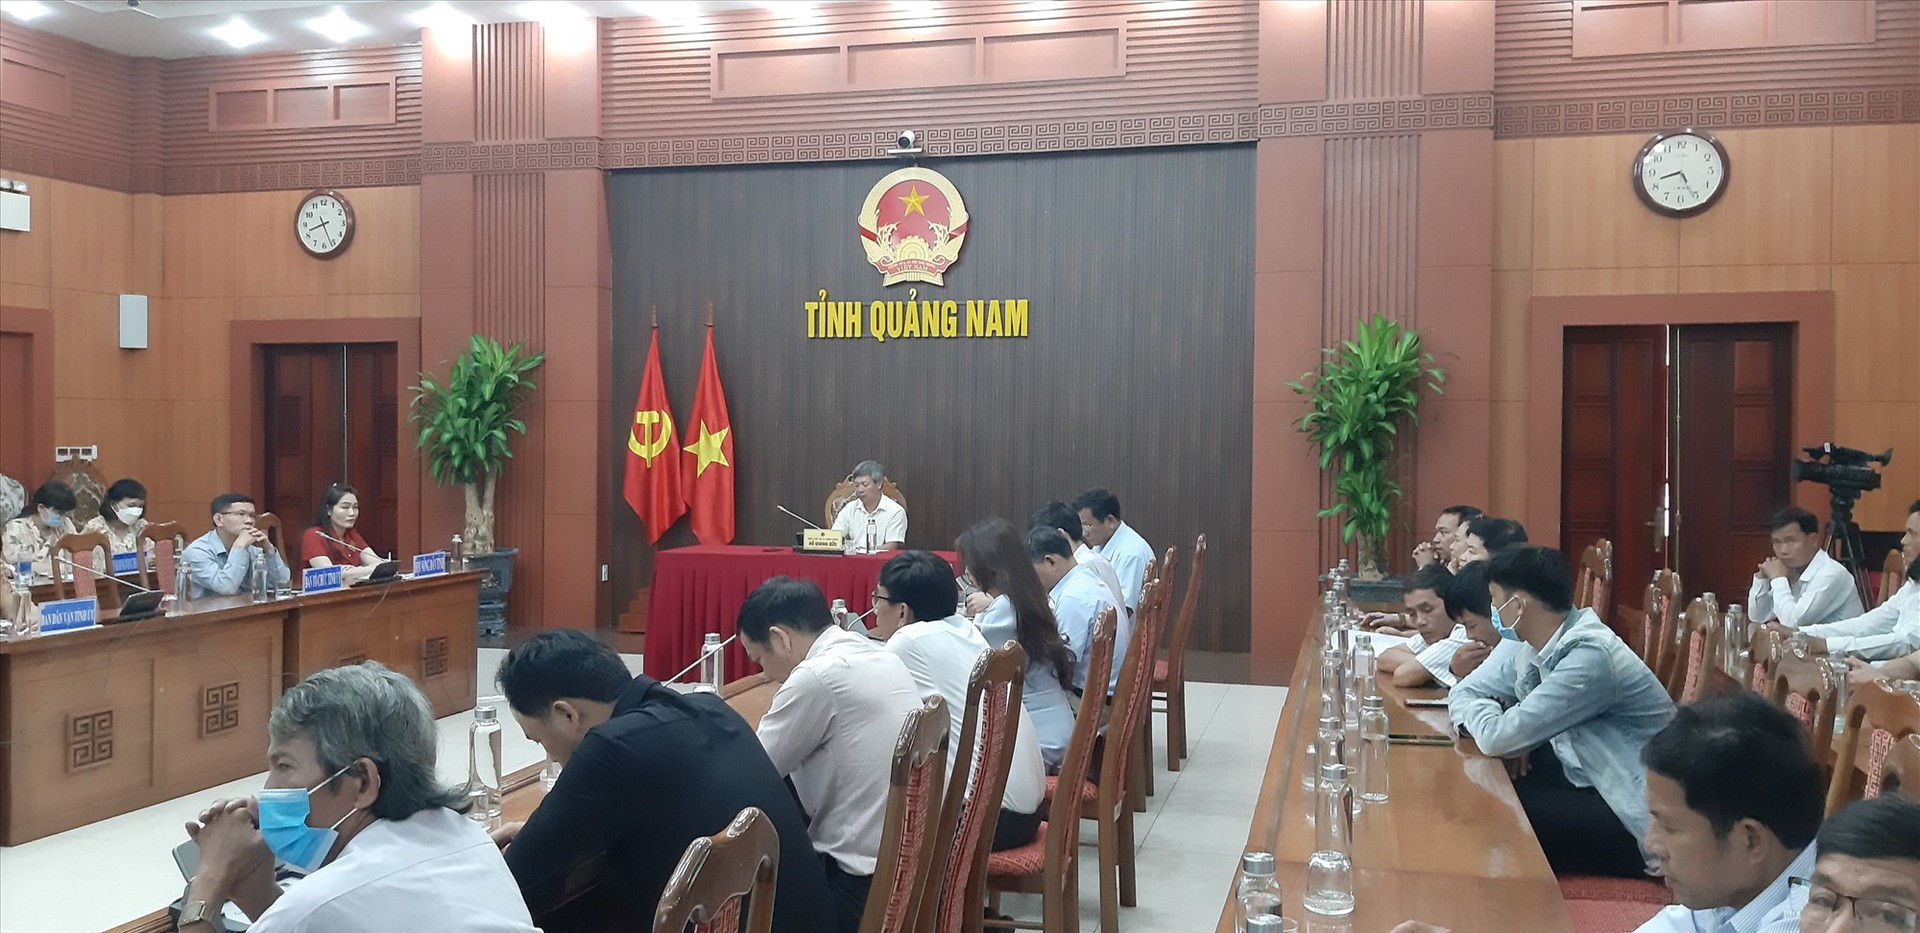 Tham dự tại điểm cầu Quảng Nam có Phó Chủ tịch UBND tỉnh Hồ Quang Bửu cùng đại diện các sở, ban ngành. Ảnh: N.S